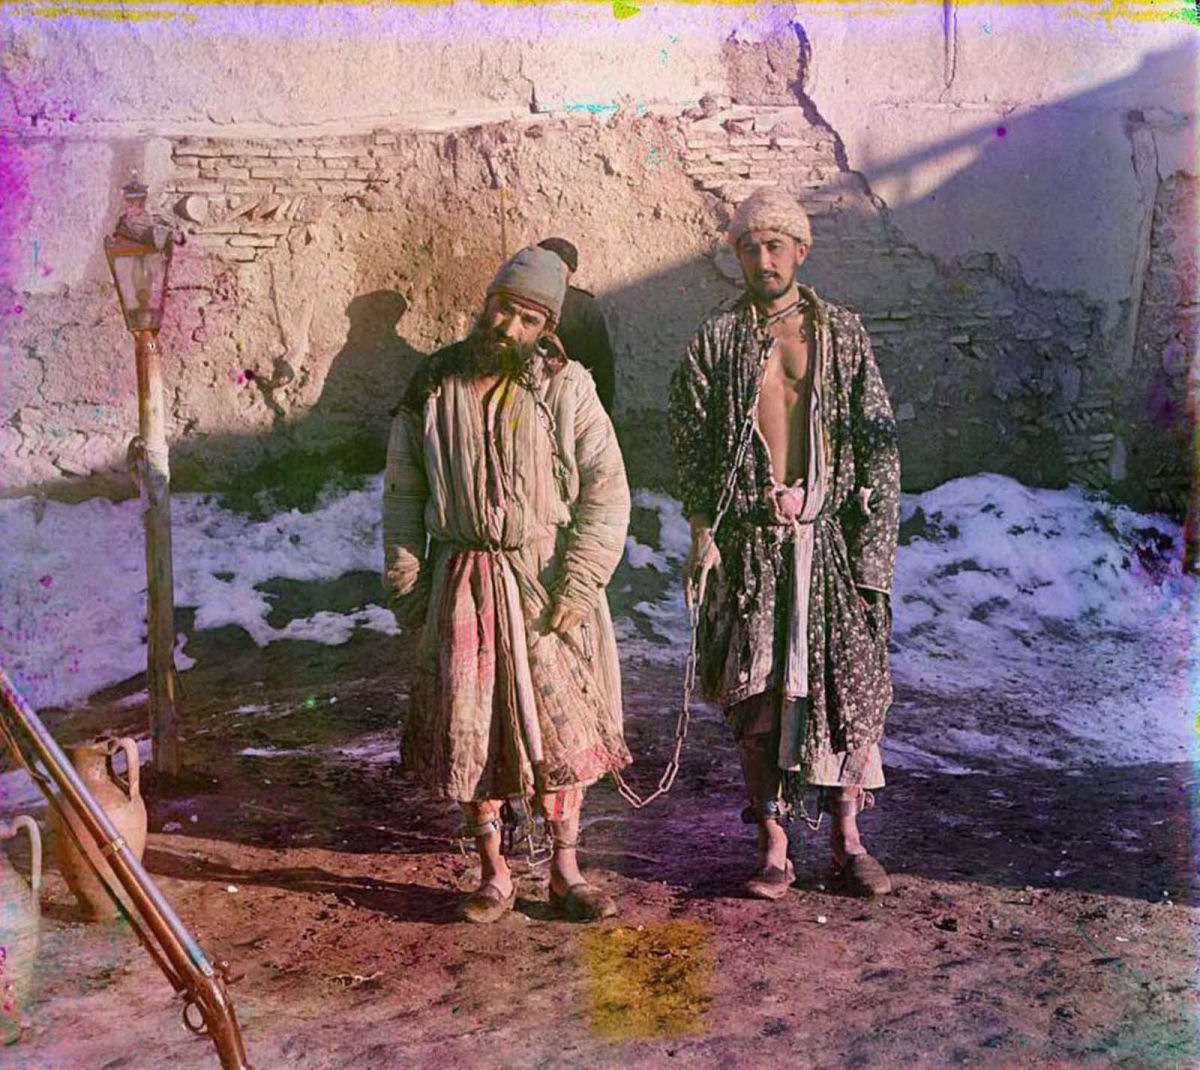 O Uzbequistão da era czarista capturado em raras fotos coloridas, entre 1907 e 1911 15